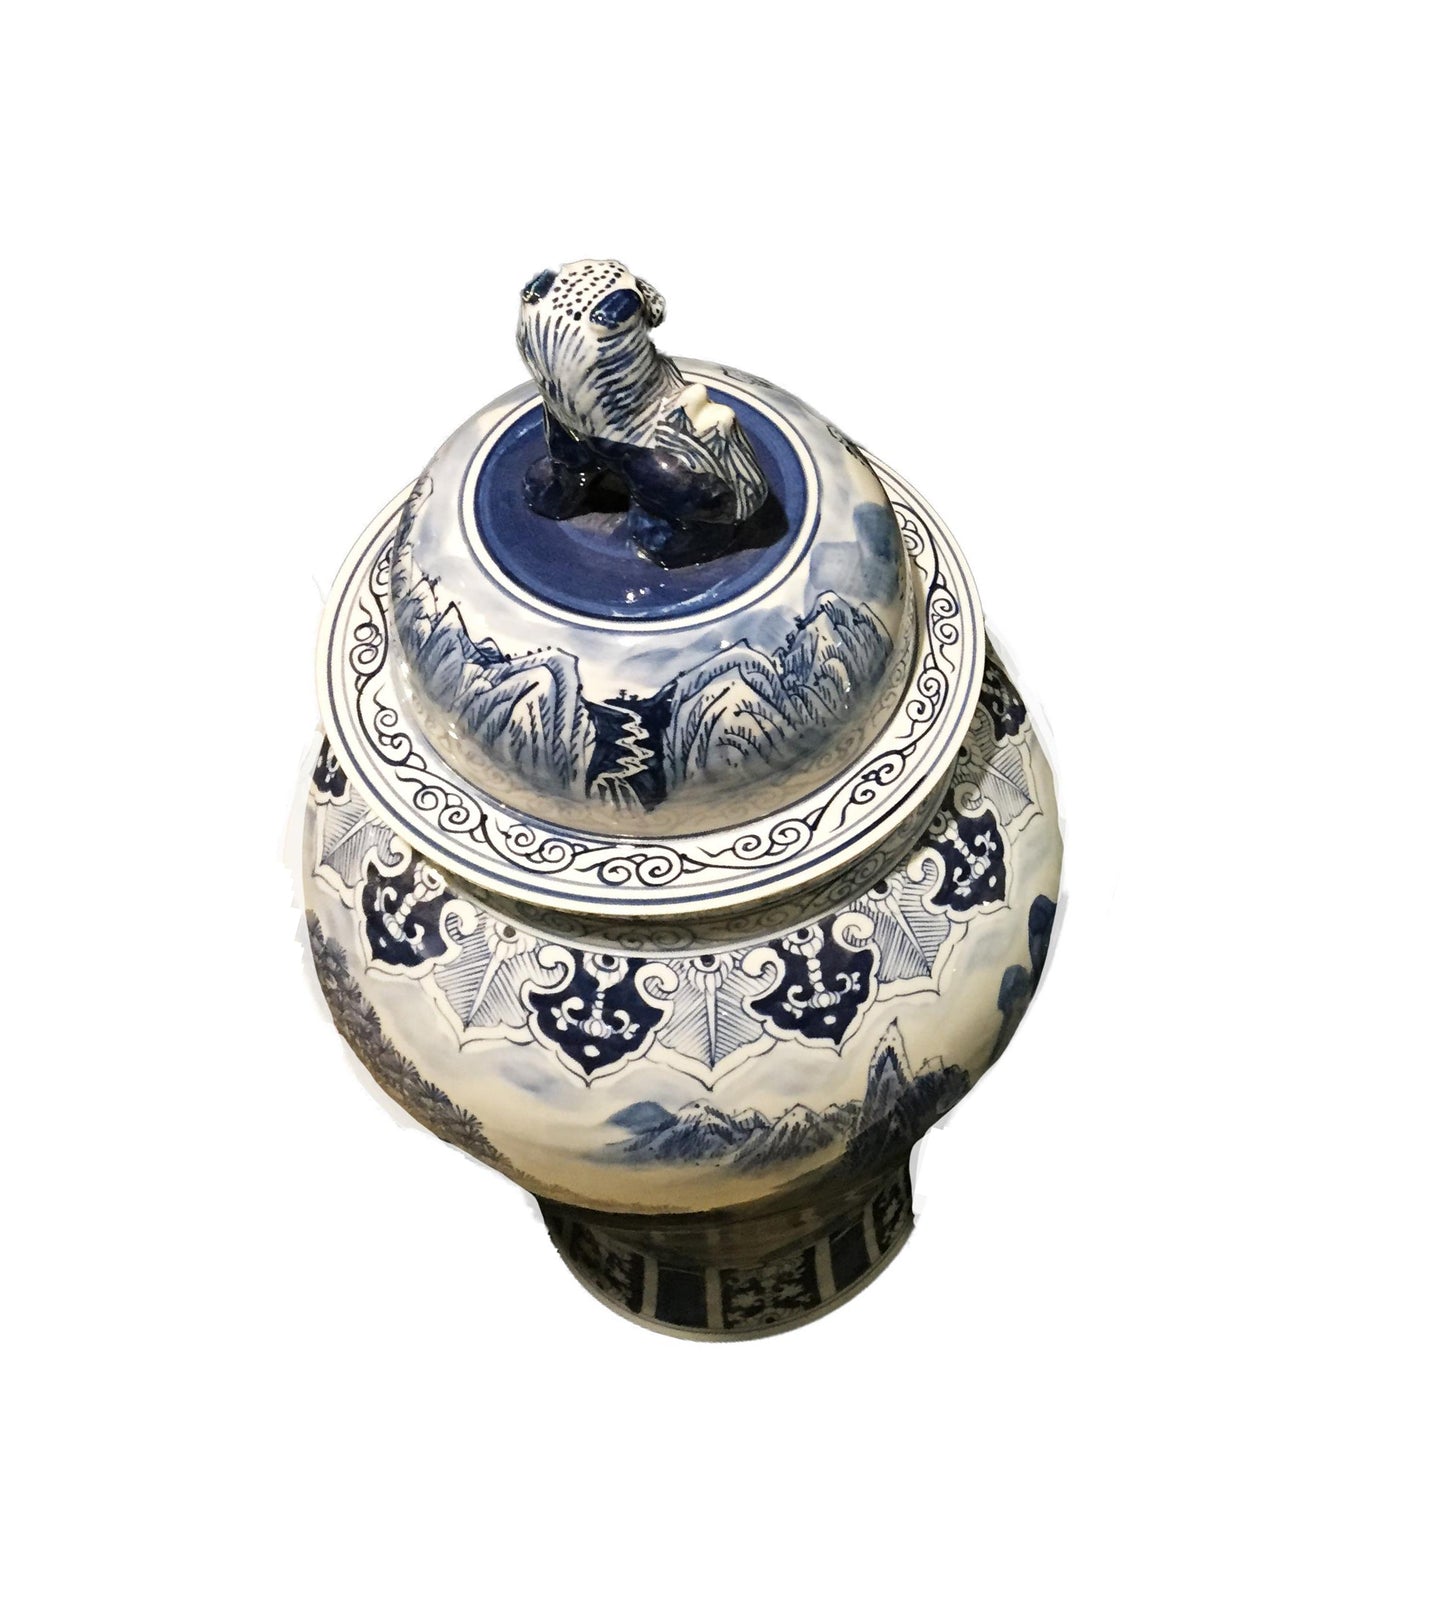 #952 Mansion Size Chinoiserie Porcelain Landscape Ginger Jar